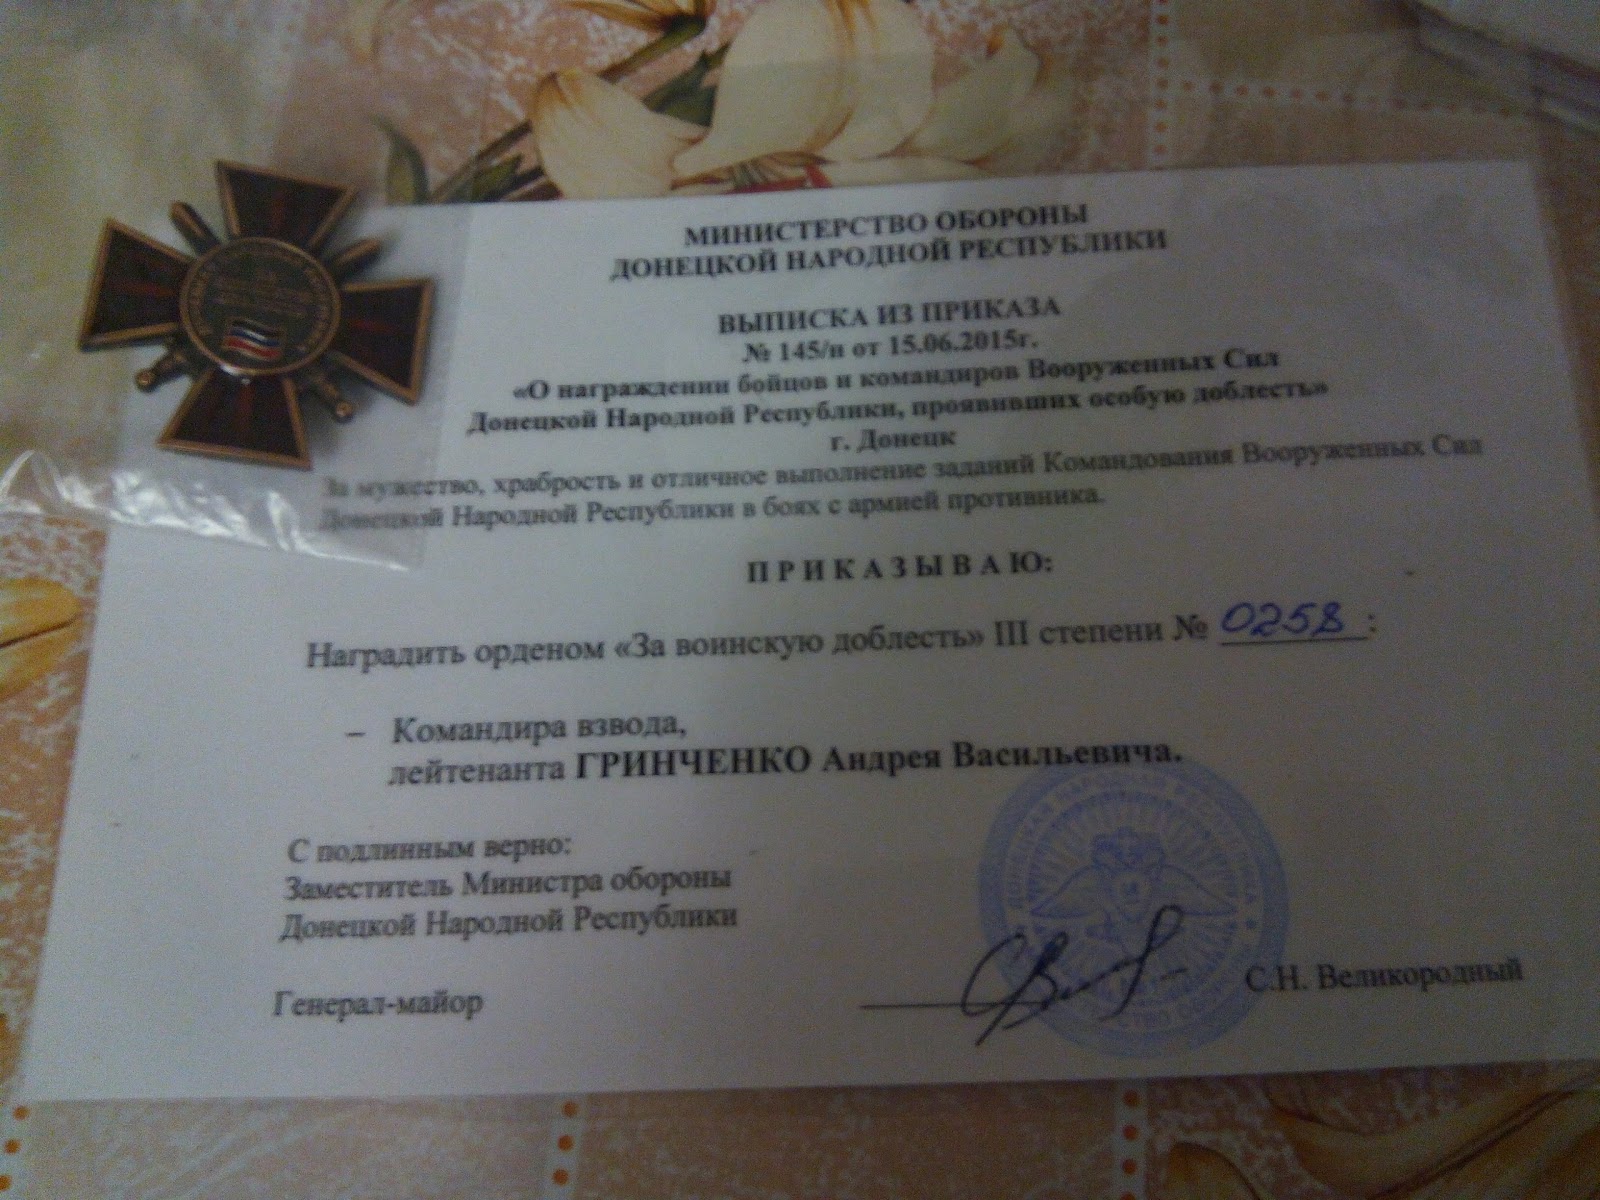 15 червня 2015 р Грінченка був нагороджений орденом «За військову доблесть III ступеня»: